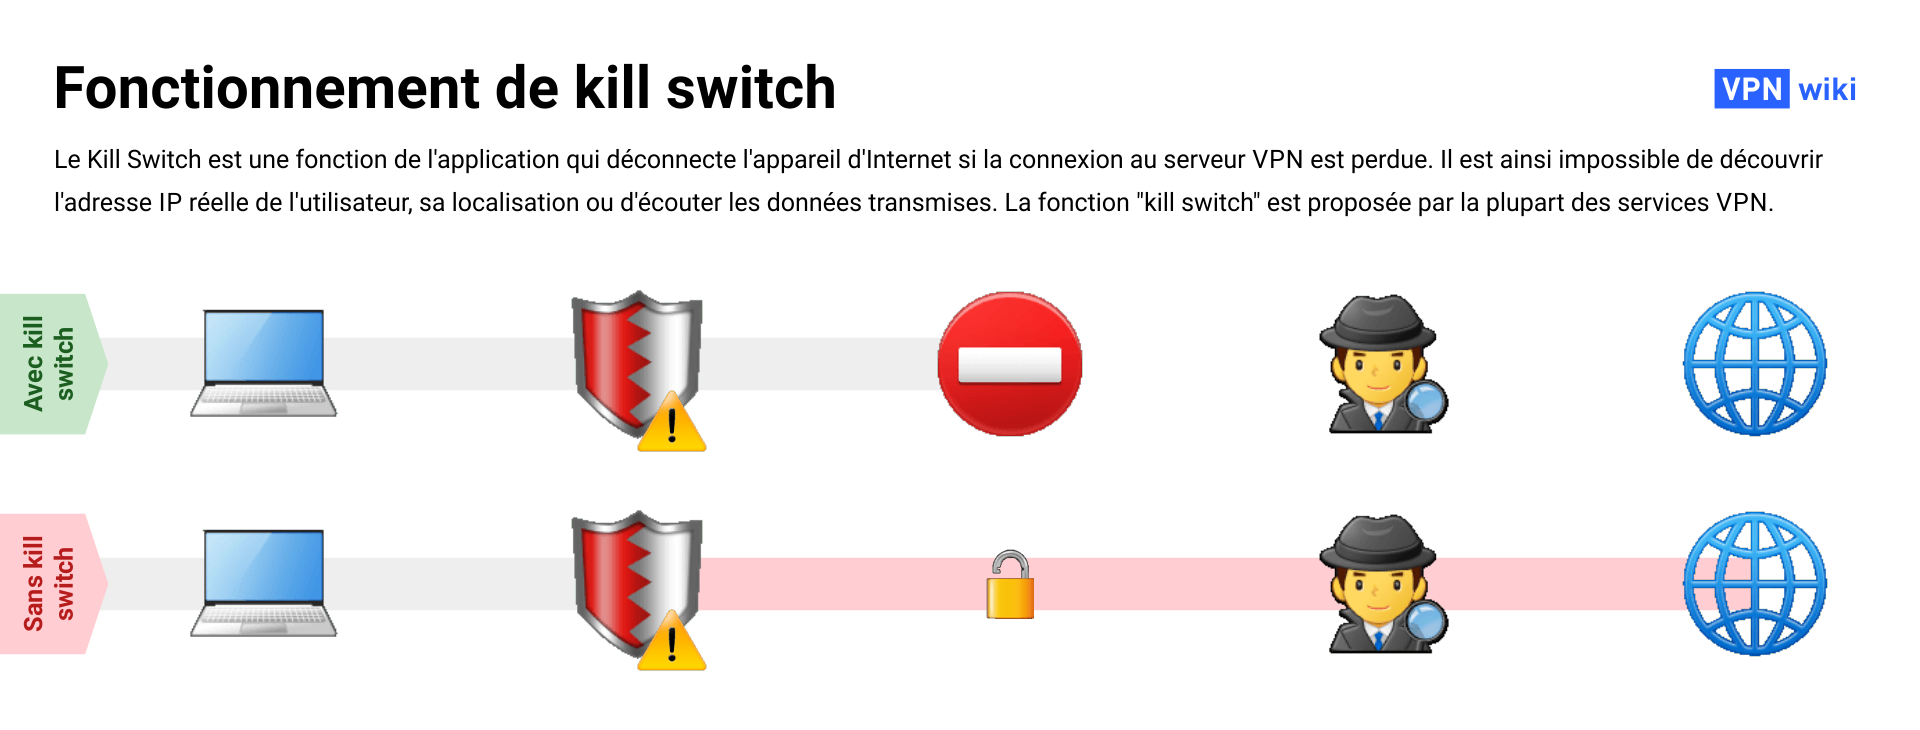 Qu’est-ce que le kill switch dans un VPN et comment cela fonctionne-t-il ?